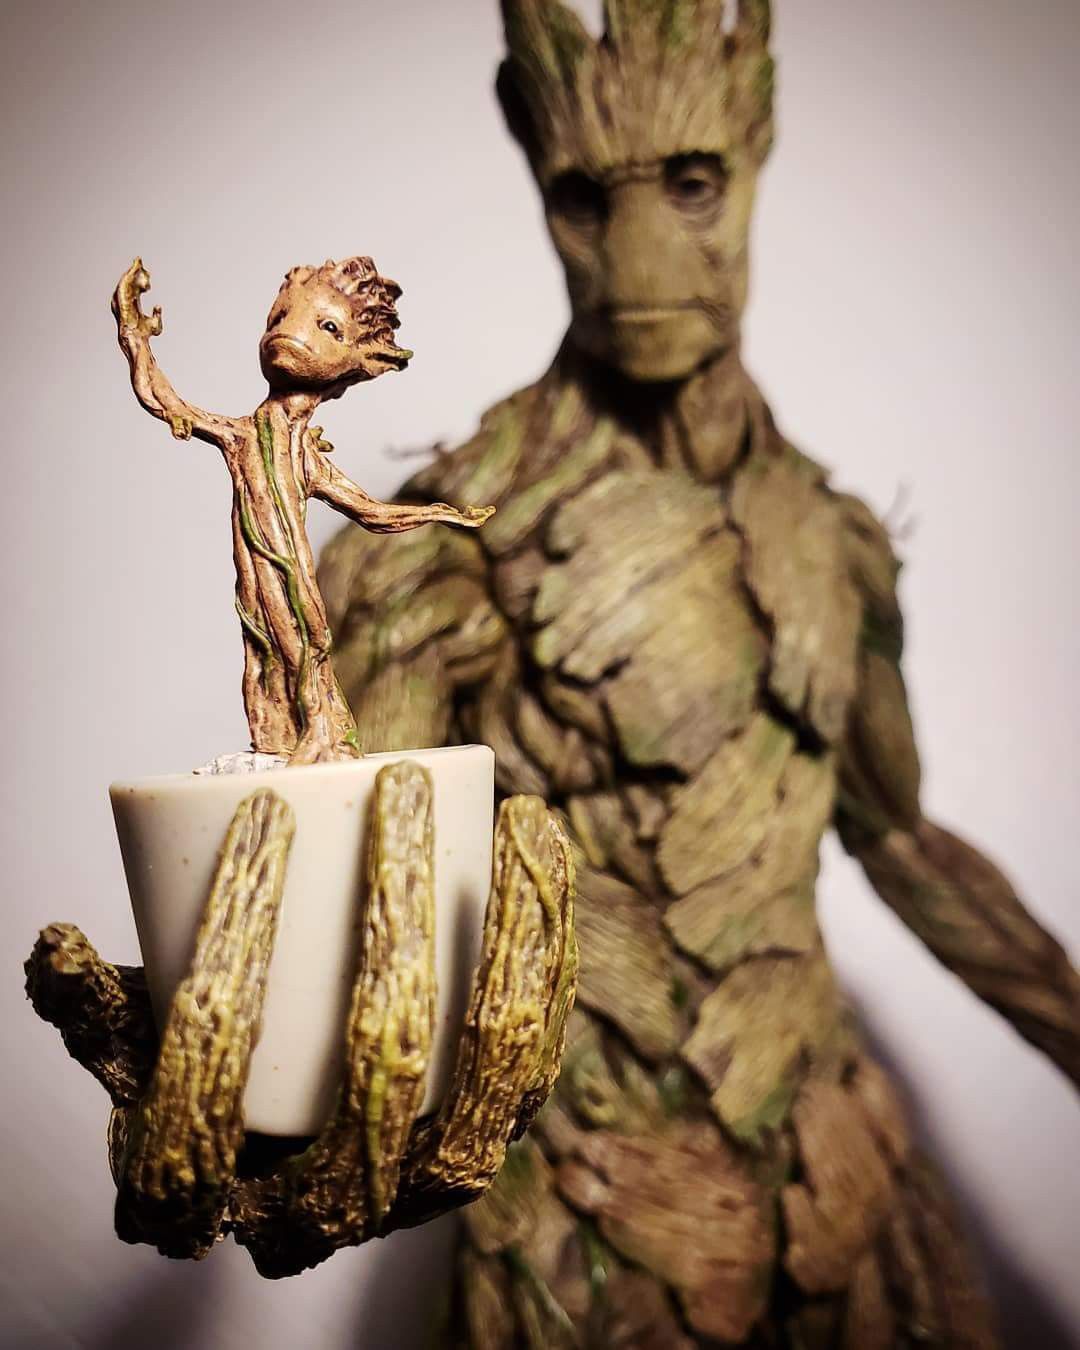 I am Groot with baby Groot. Groot, Les gardiens de la galaxie, Galaxie